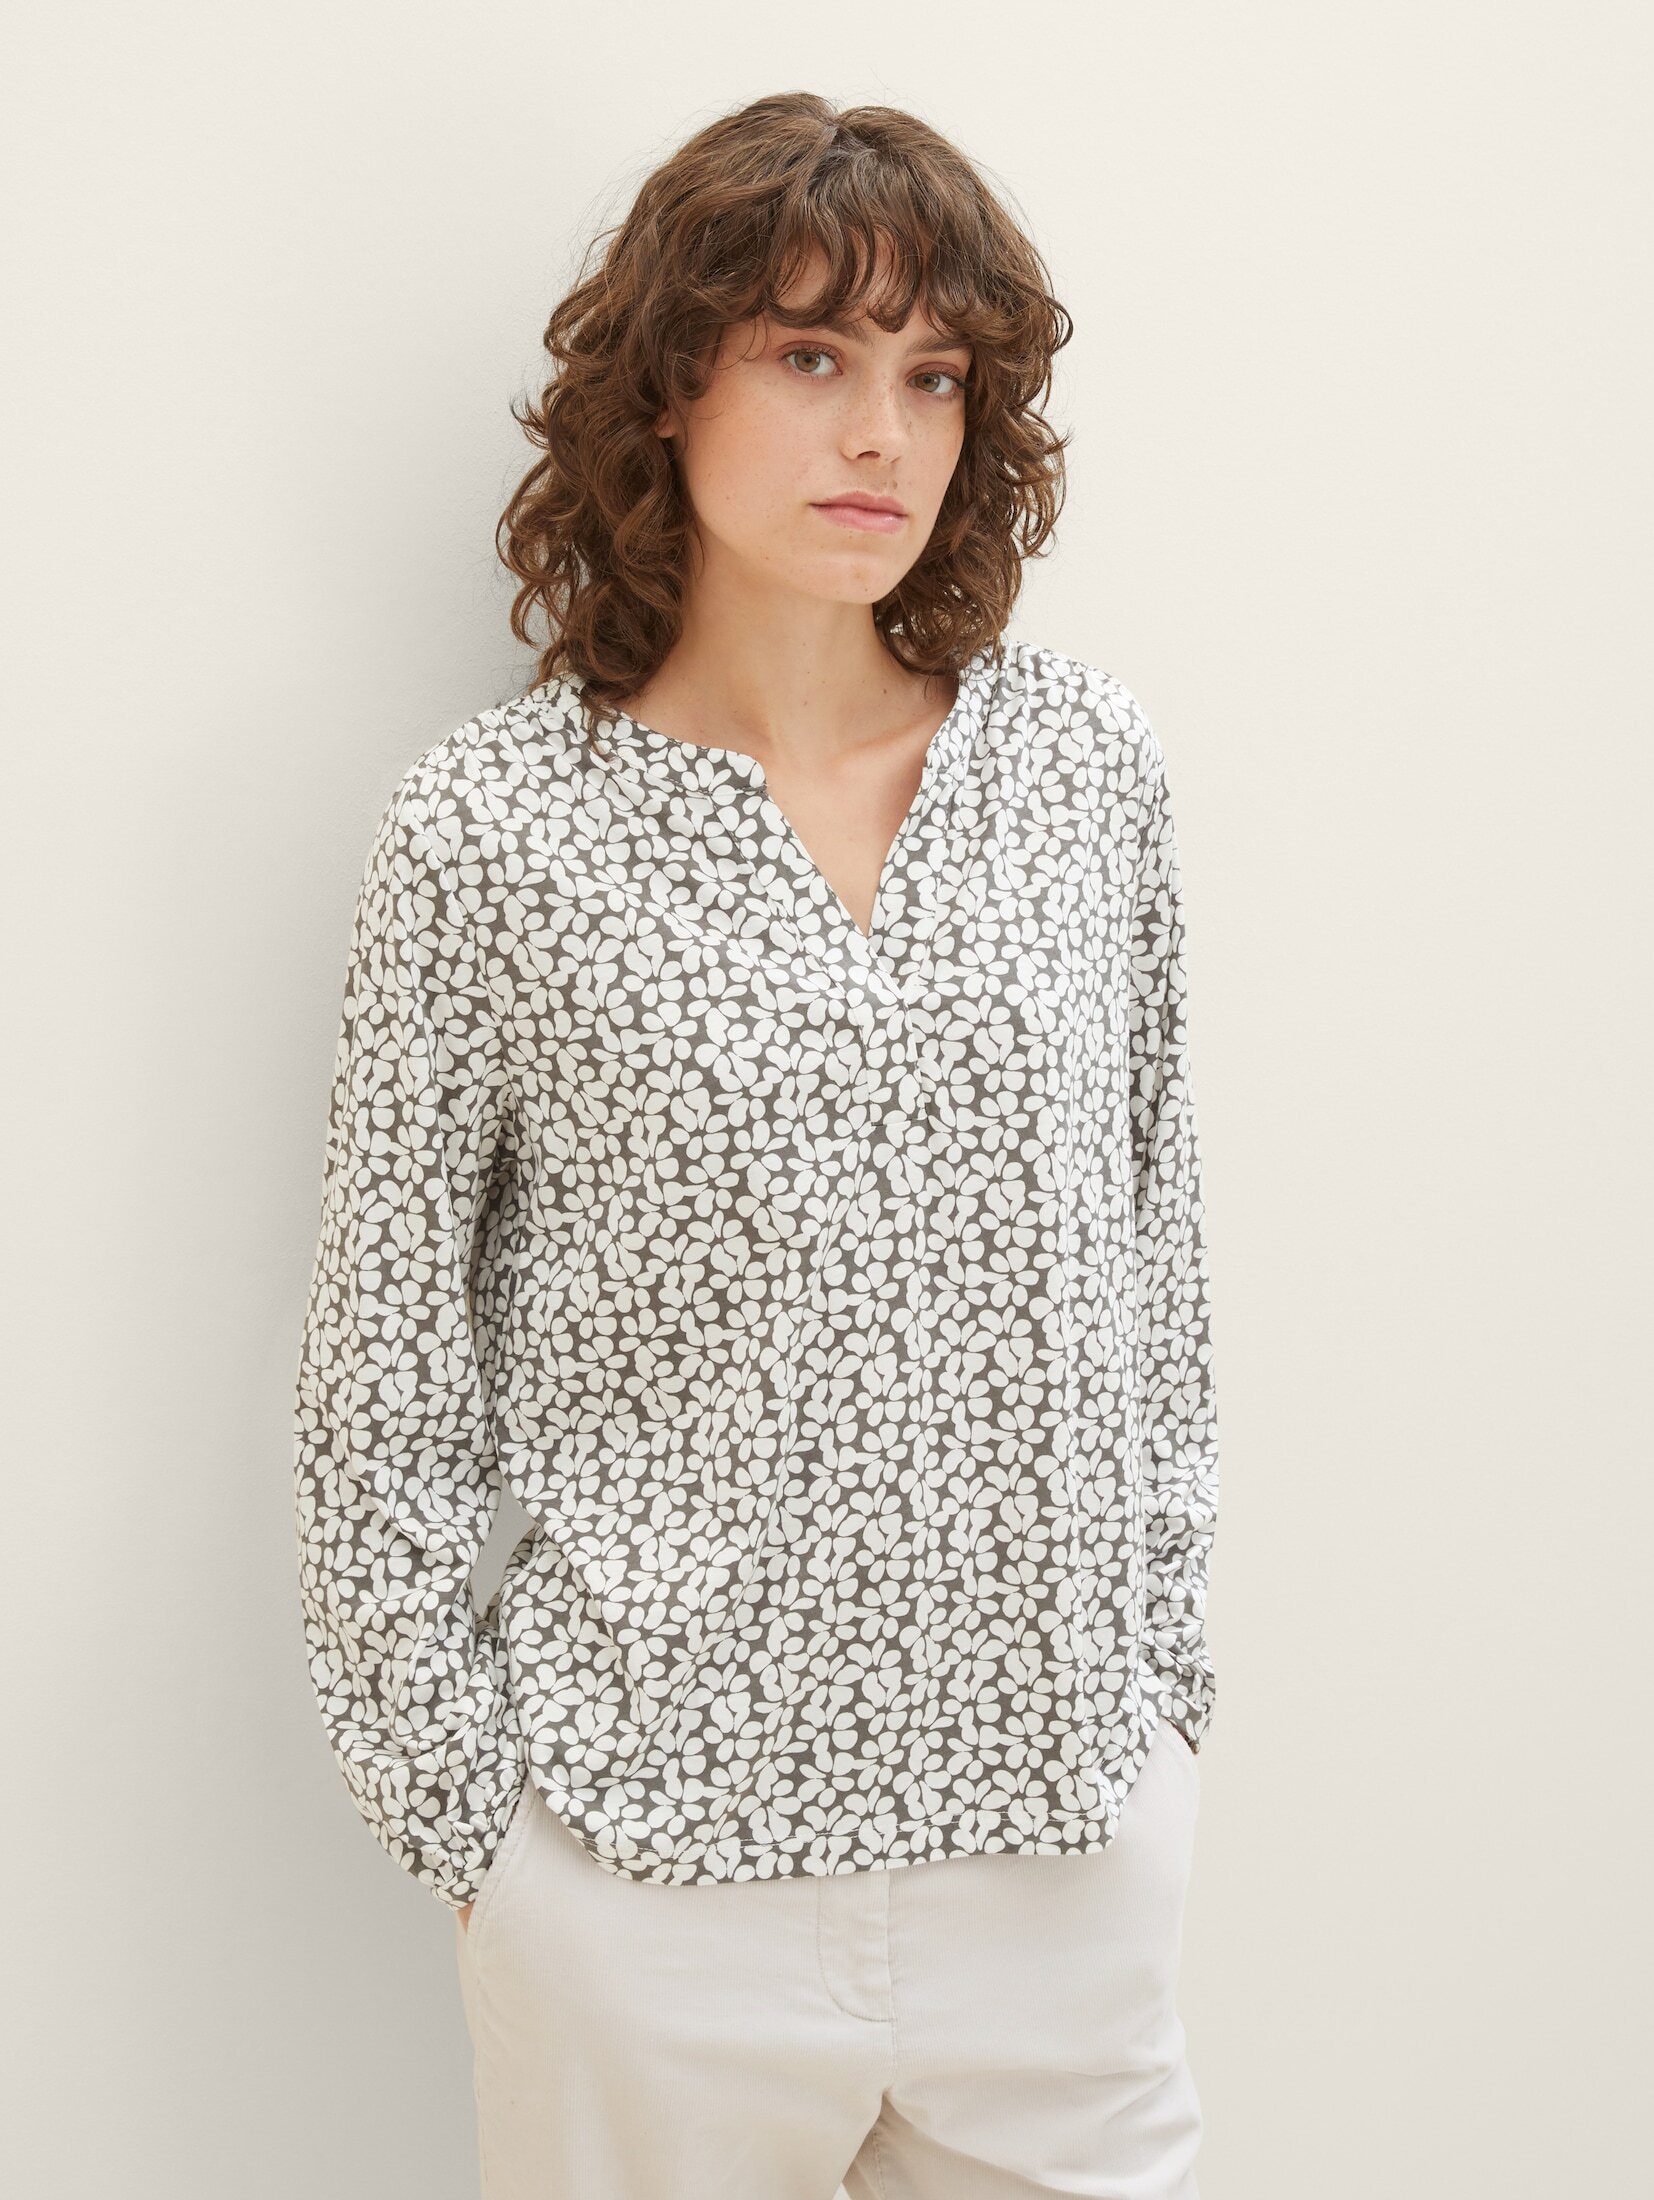 Allover-Print T-Shirt floral TAILOR Bluse mit TOM design grey